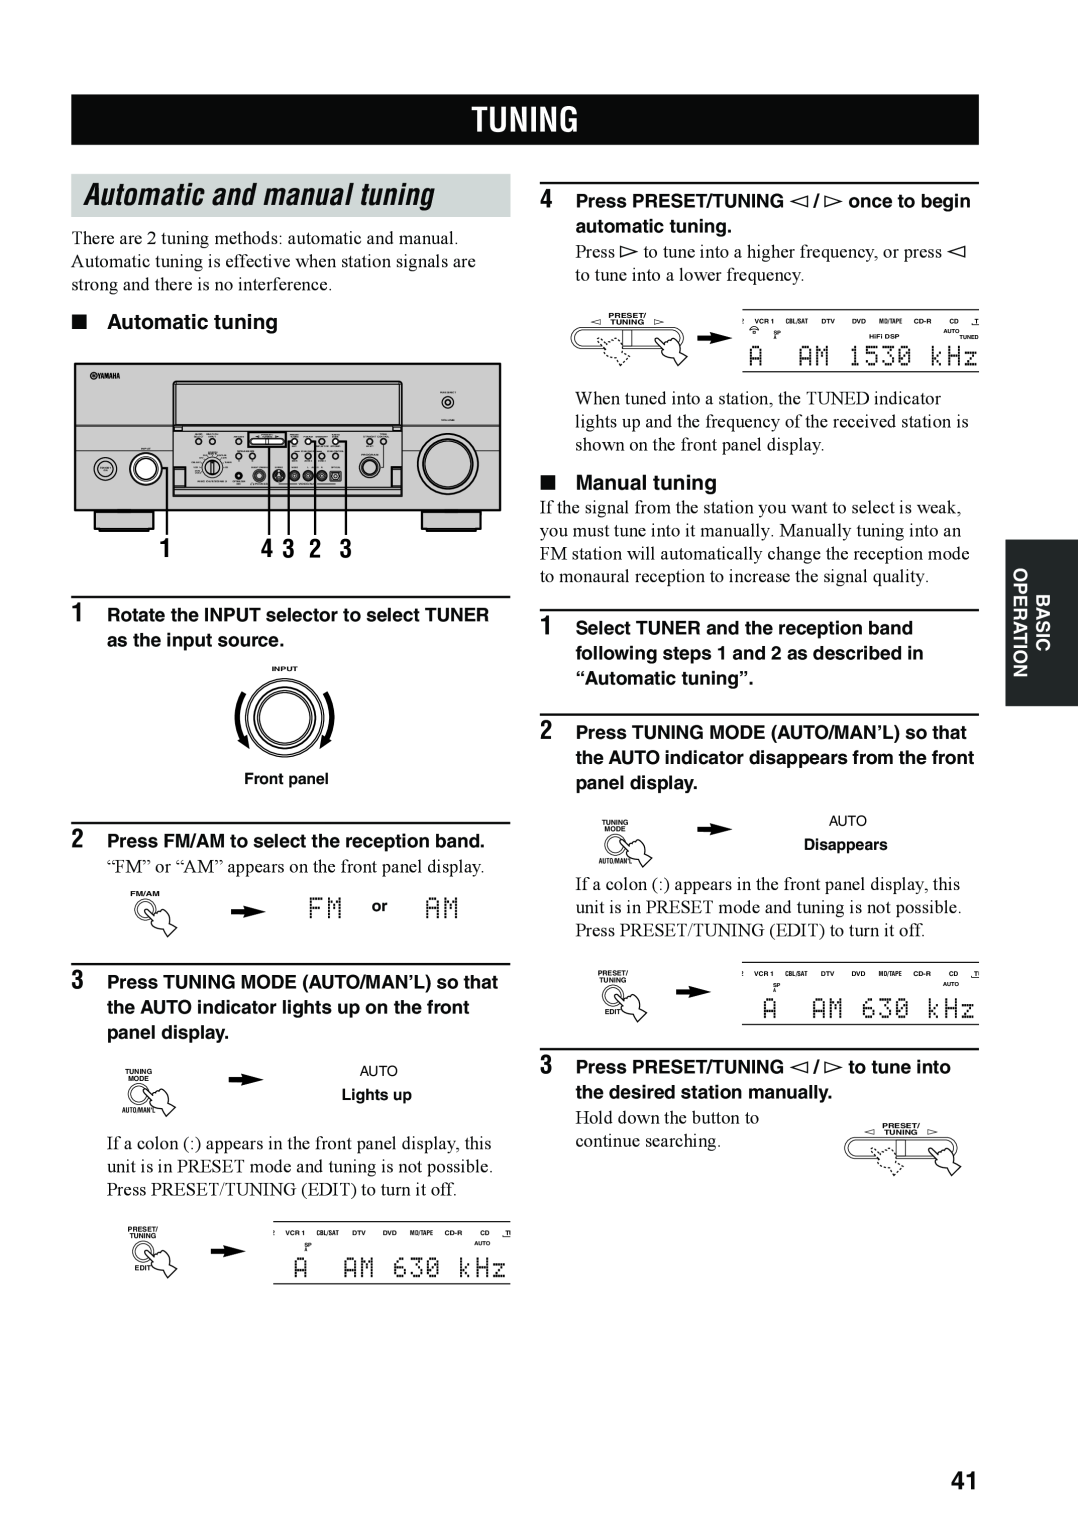 Yamaha RX-V4600 Tuning, Automatic and manual tuning, A AM 1530 kHz, Automatic tuning, Manual tuning, automatic tuning 